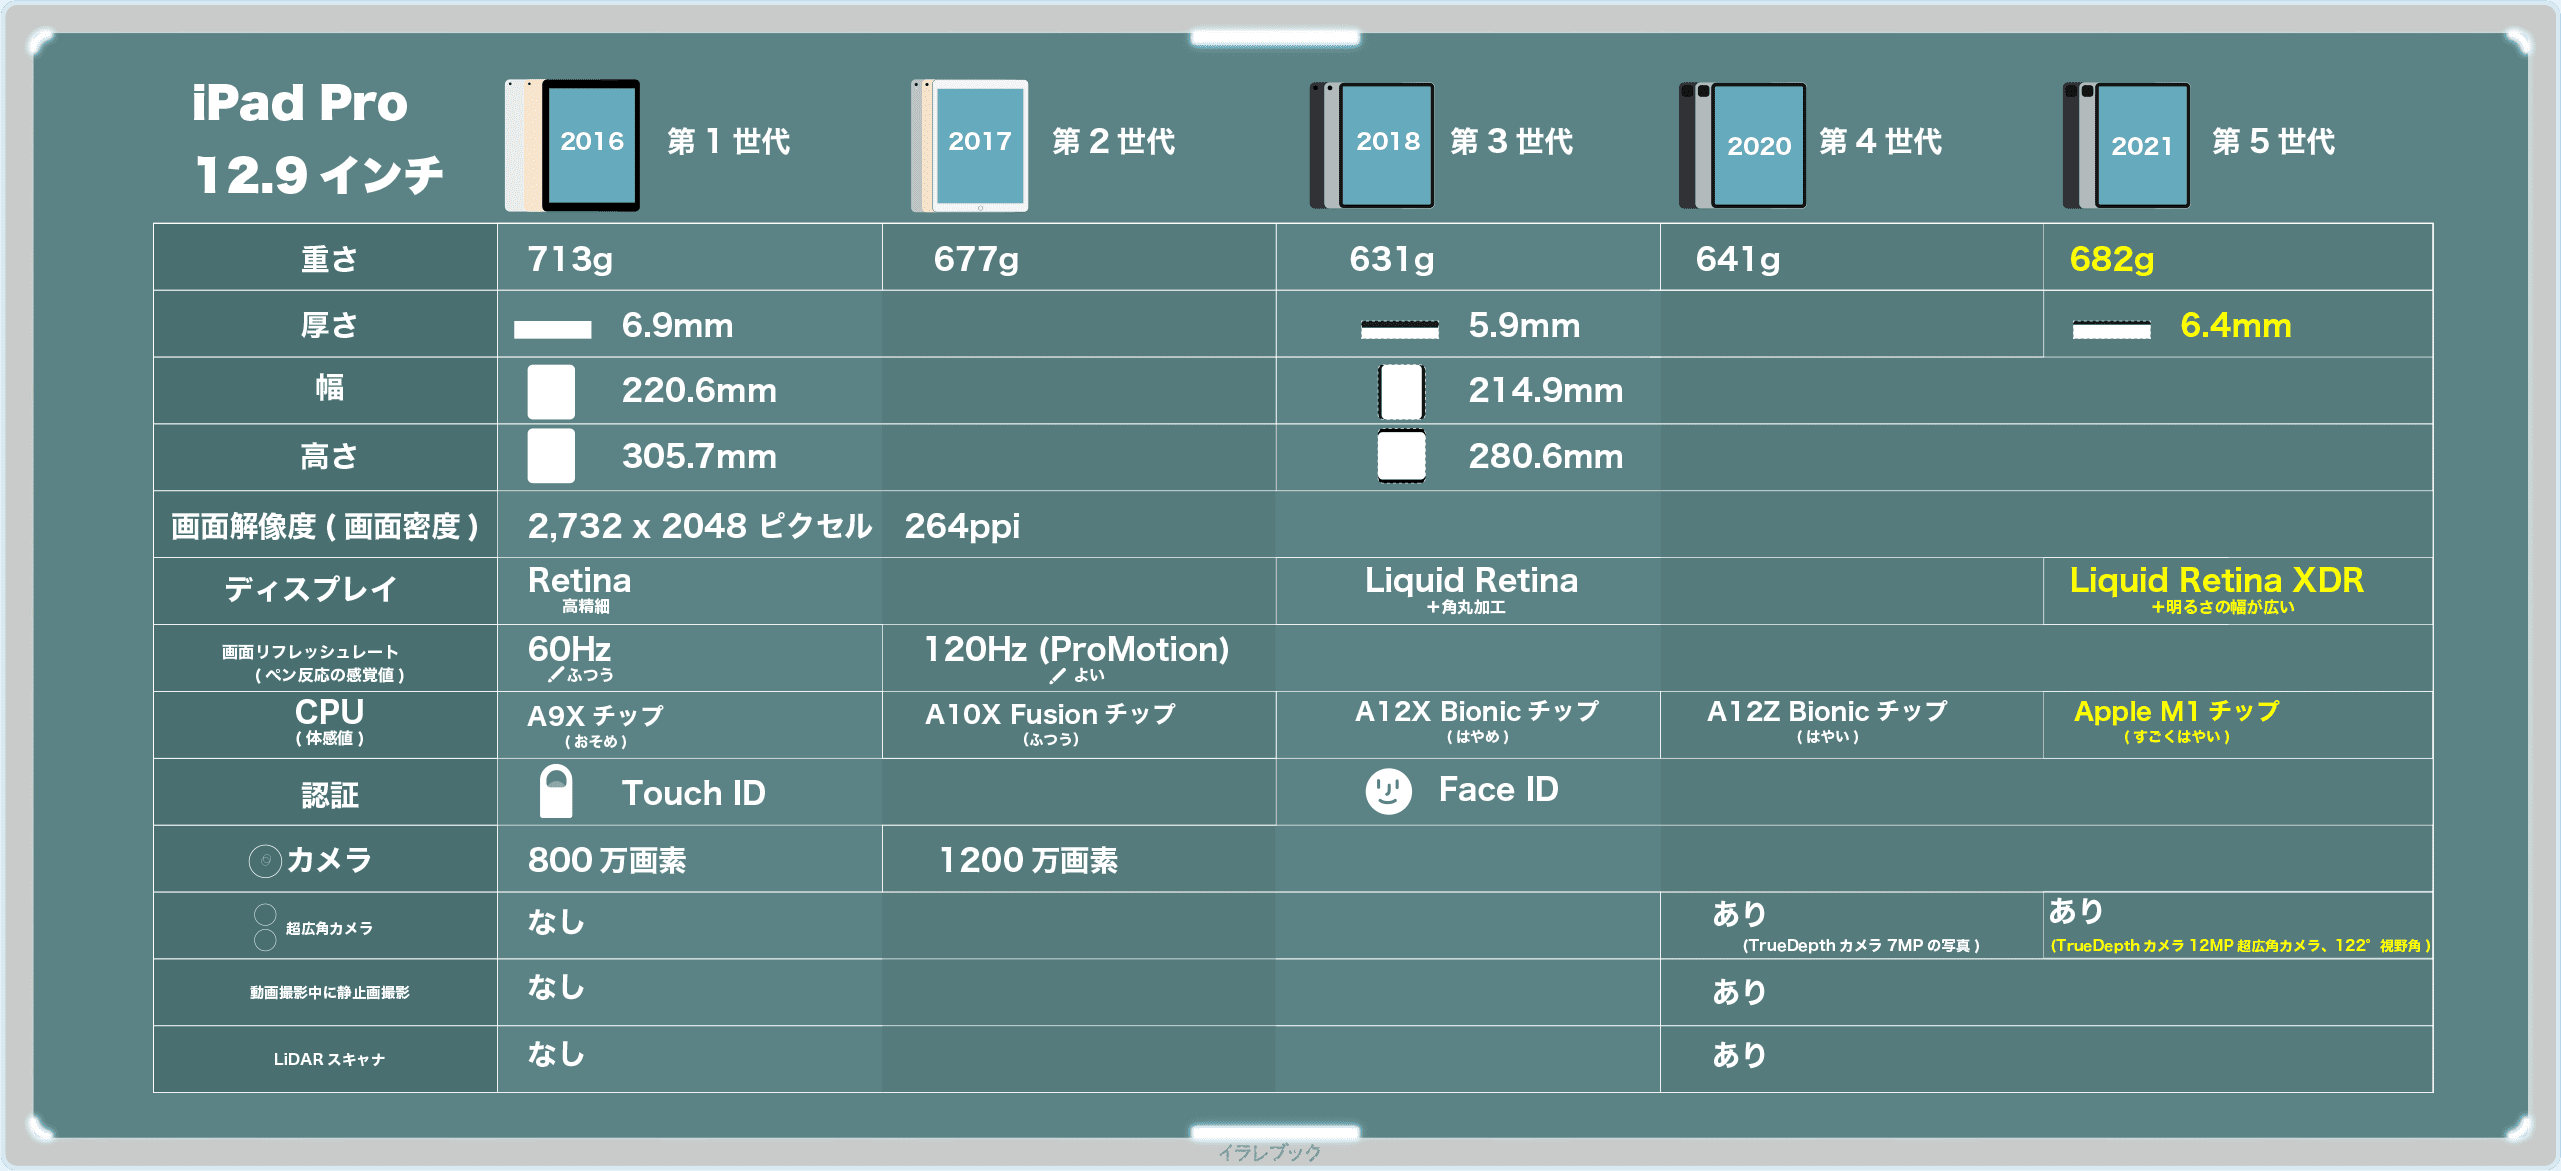 iPad Pro 12.9主要機能比較表